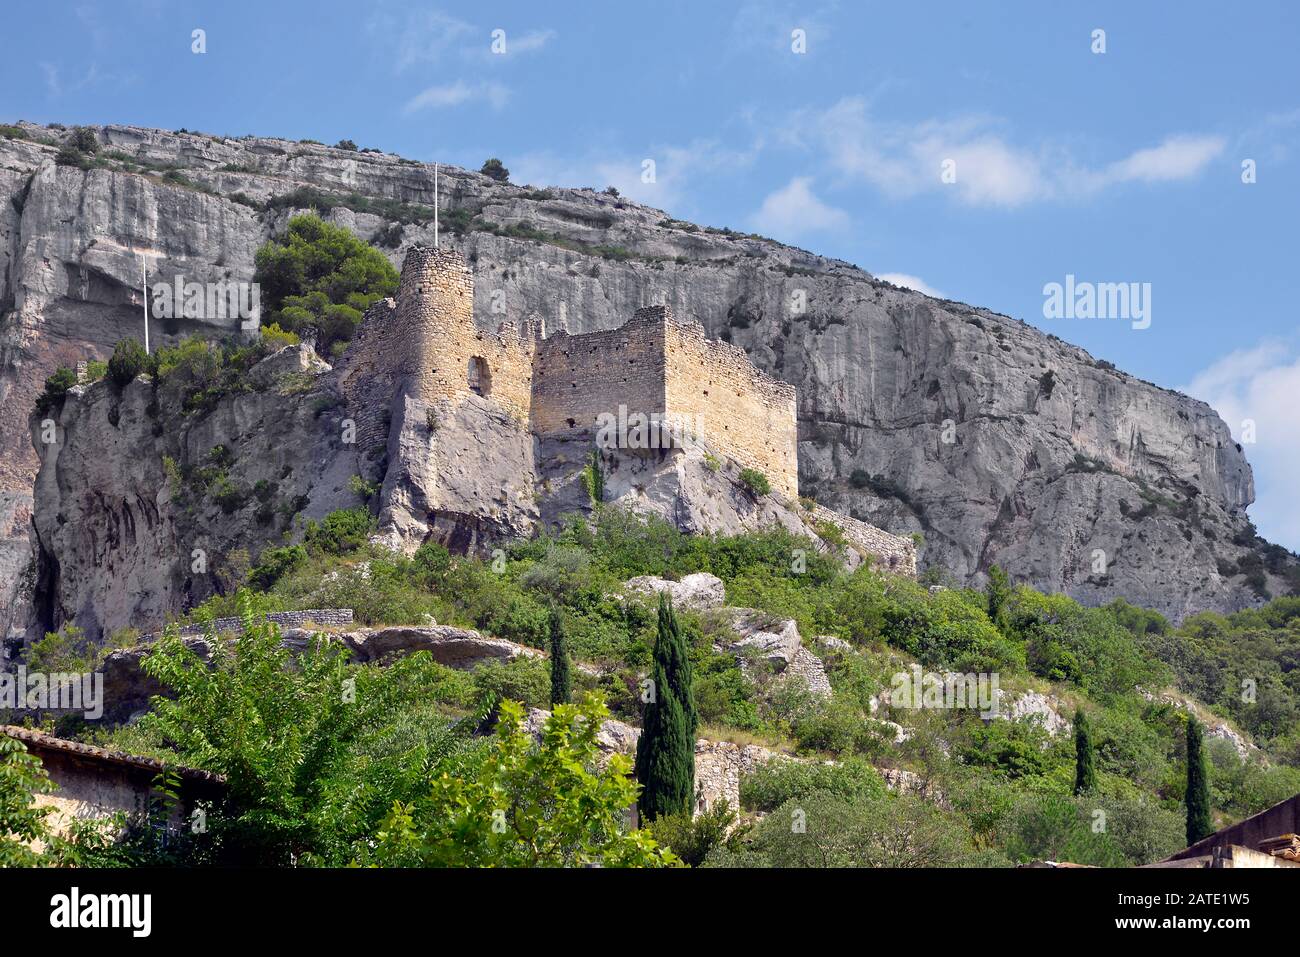 Château en ruines dans la montagne à Fontaine de Vaucluse, commune française, située dans le département de Vaucluse et la région Provence-Alpes-Côte d'Azur Banque D'Images